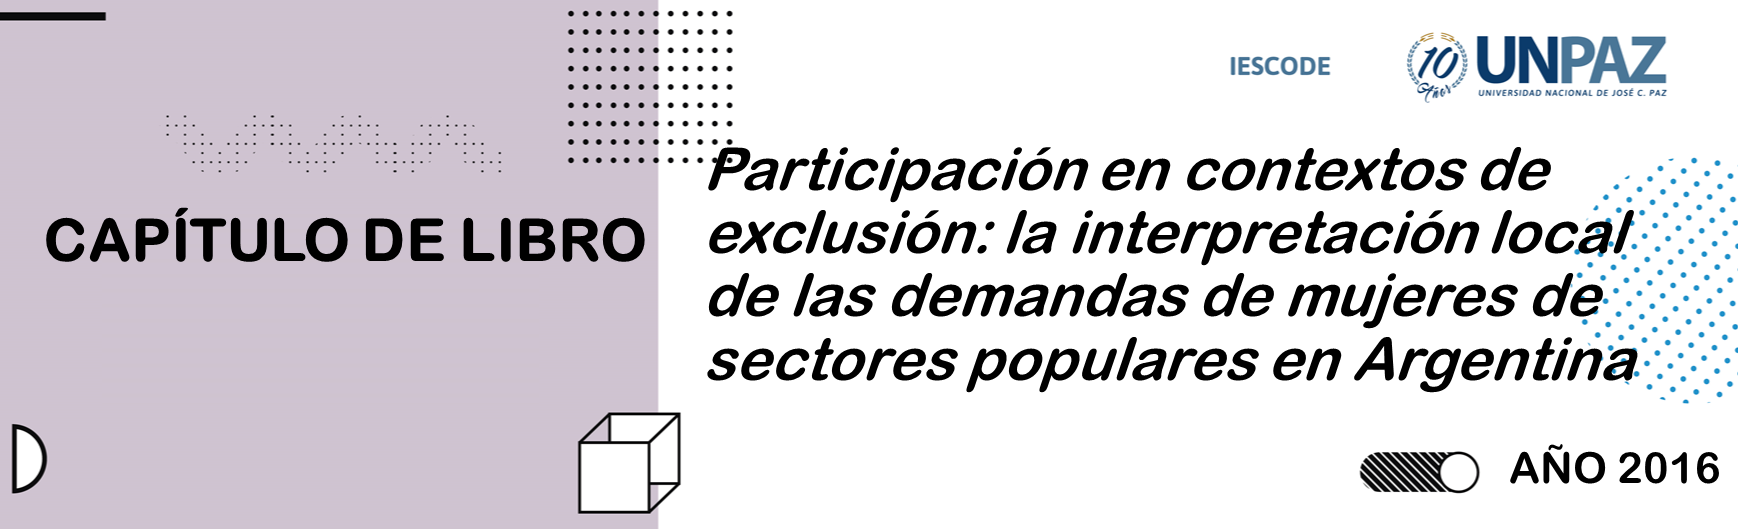 Participación en contextos de exclusión: la interpretación local de las demandas de mujeres de sectores populares en Argentina